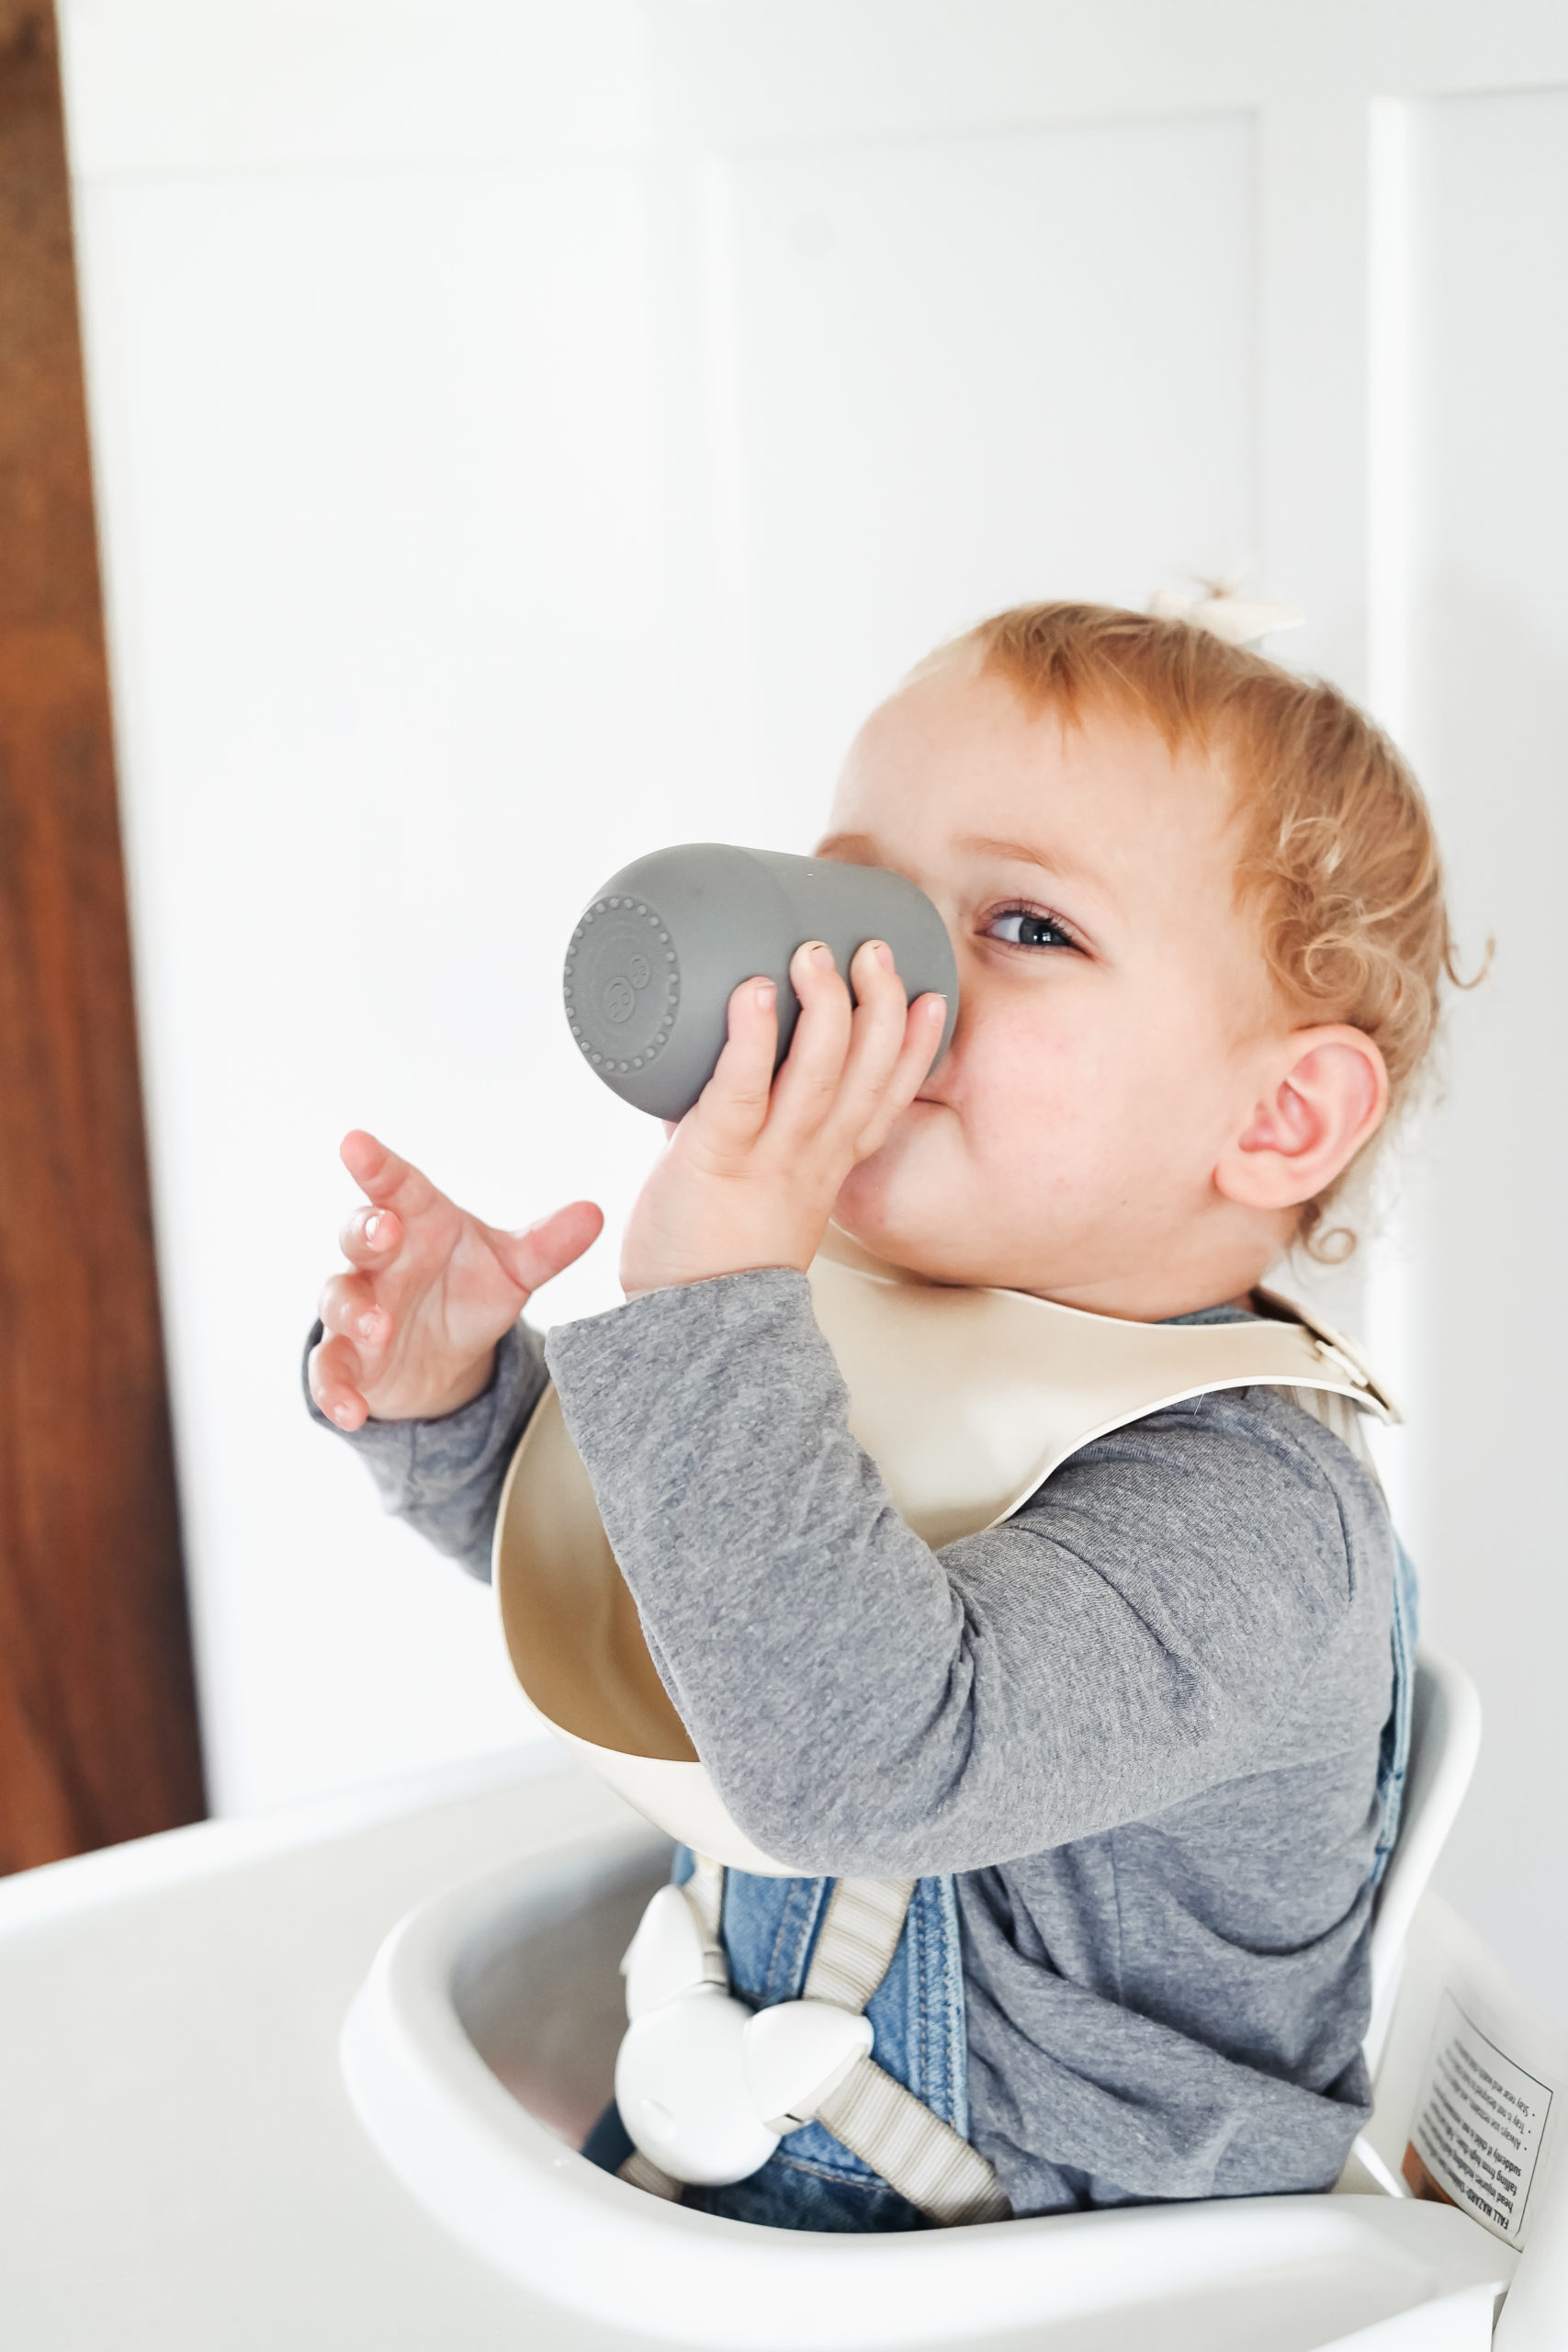 The 10 Most Helpful Baby Feeding Essentials